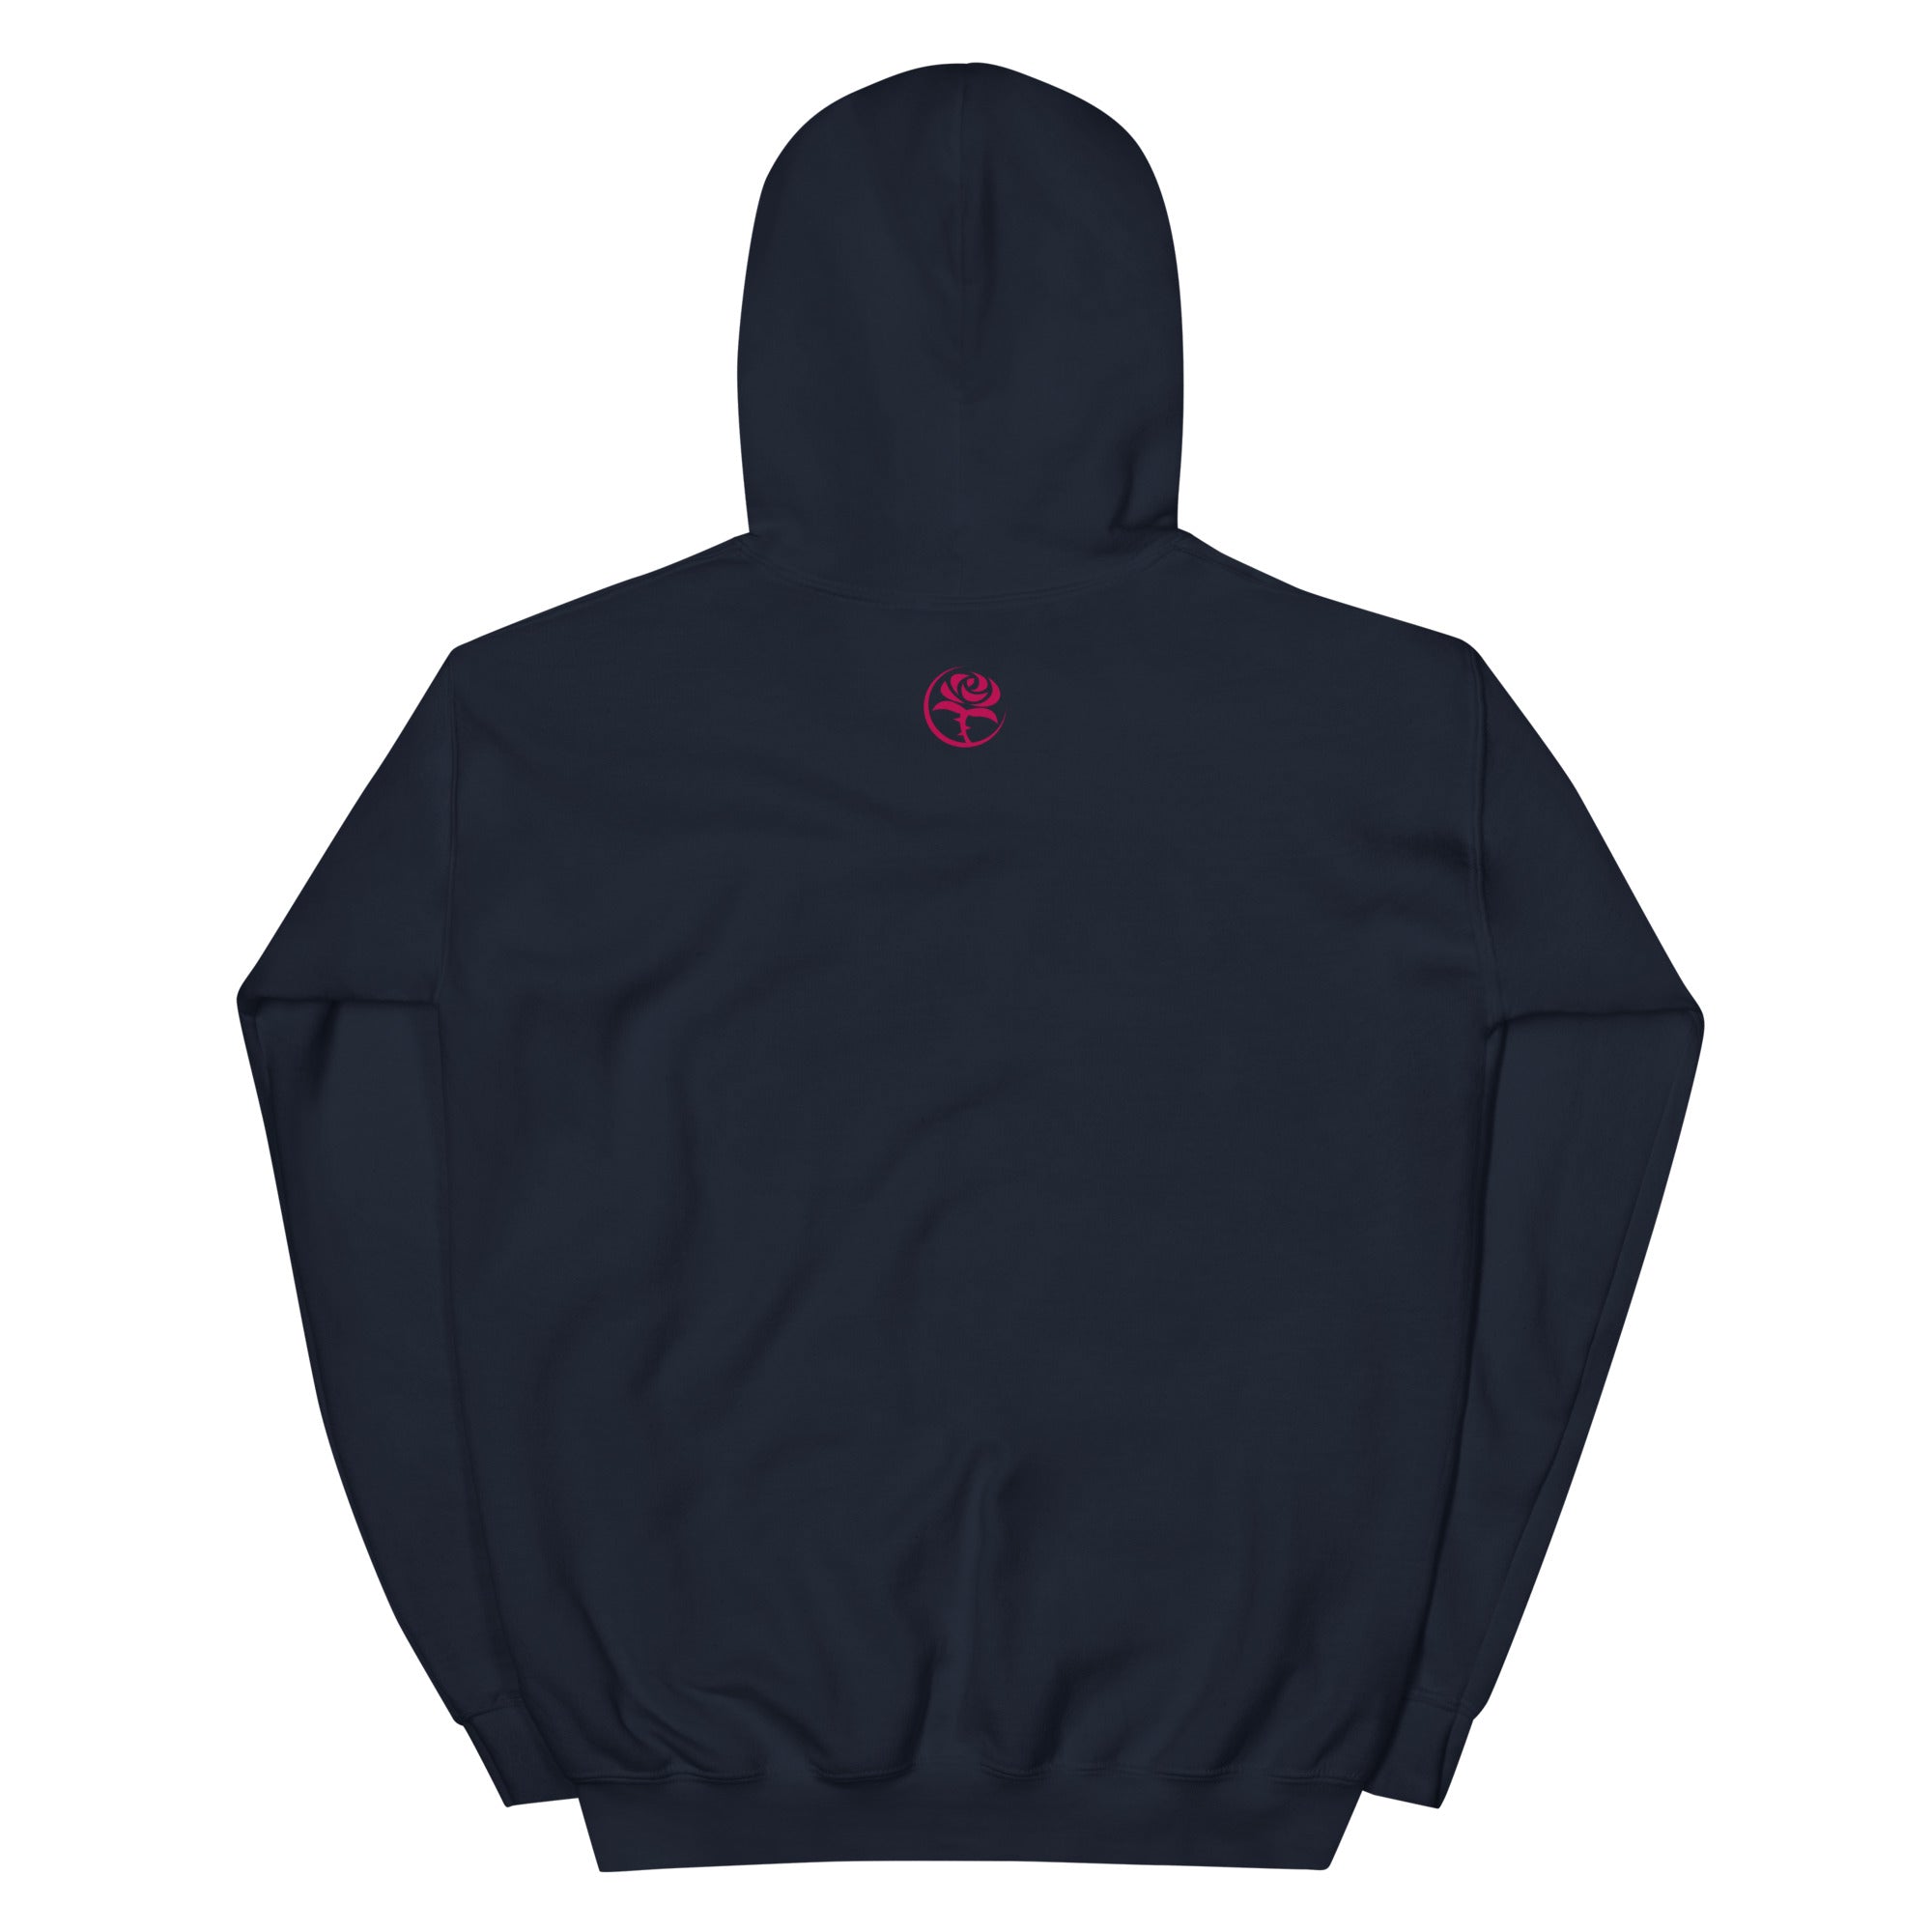 'thorn n petal' logo Men's comfort hoodie (navy)